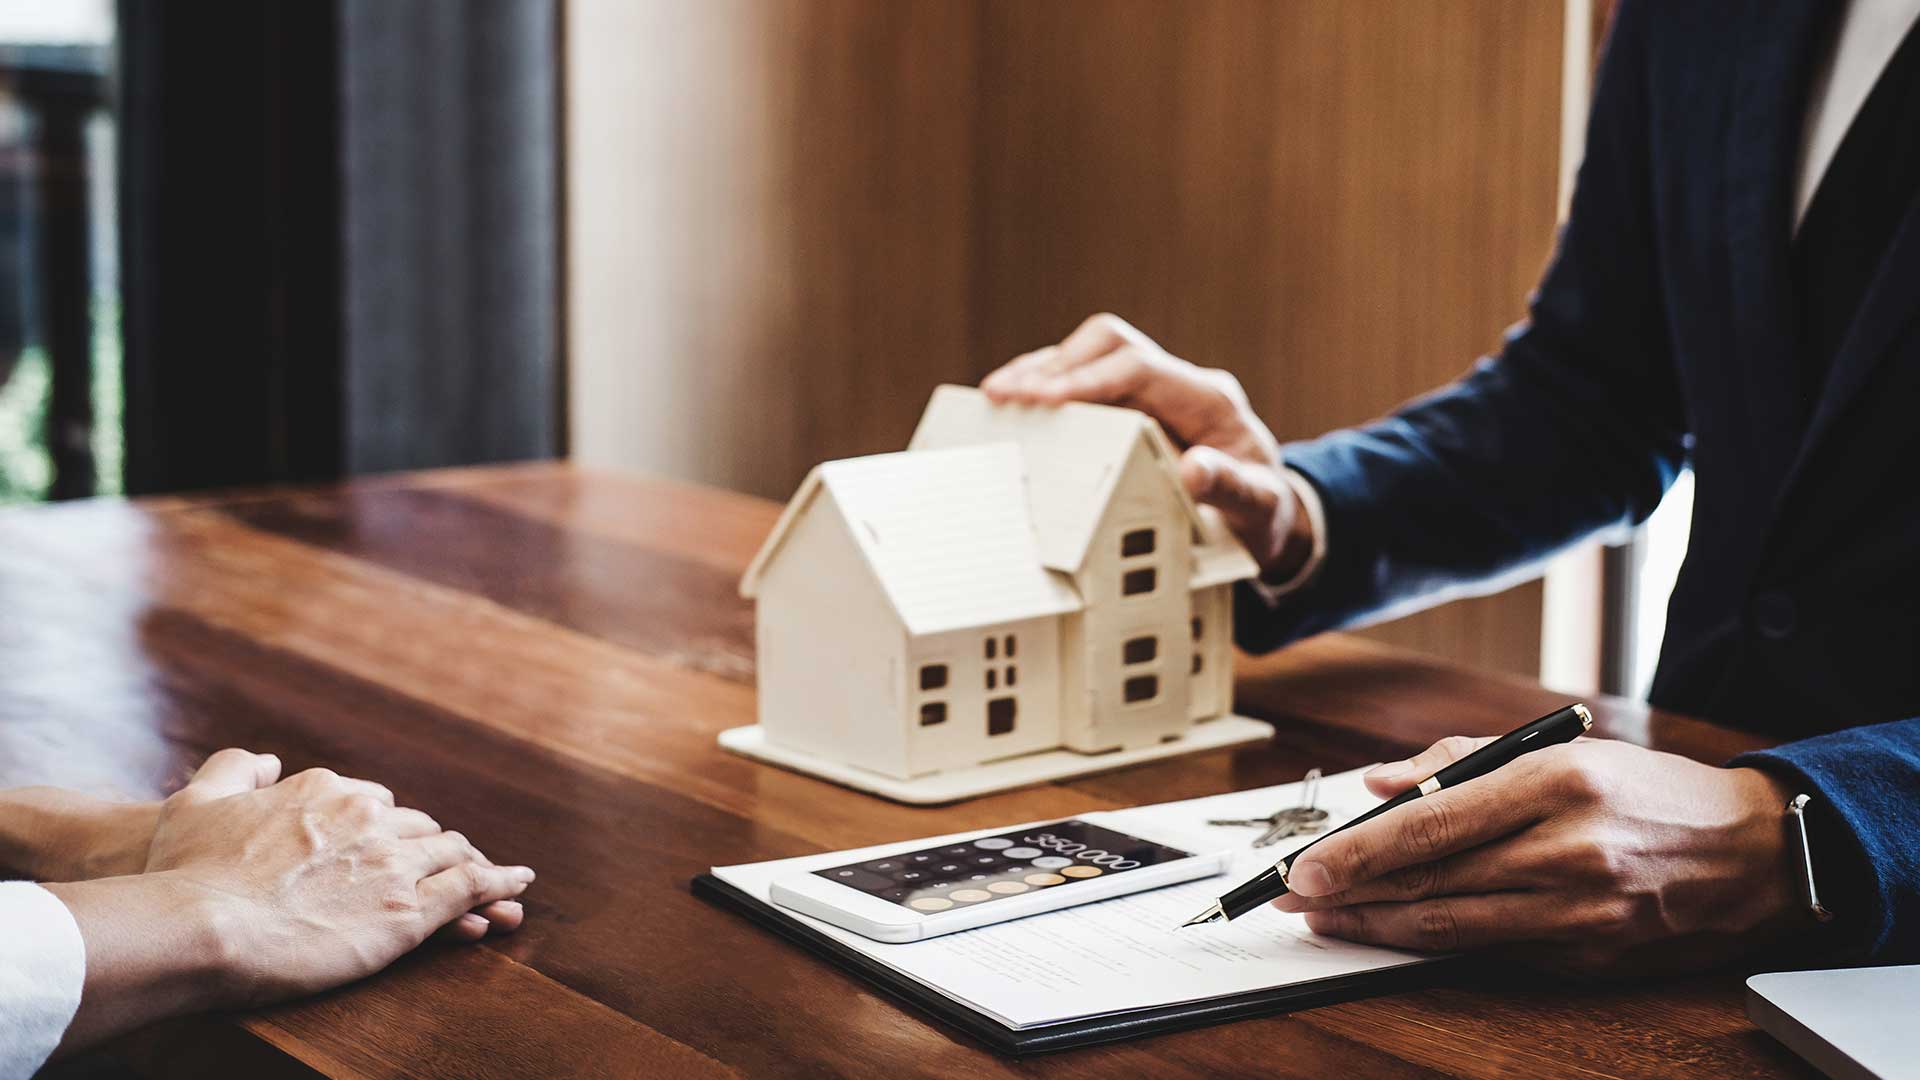 doradca kredytowy wyjaśnia klientowi warunki kredytu hipotecznego trzymając w jednej ręce długopis a w drugiej mały domek -  w 2021